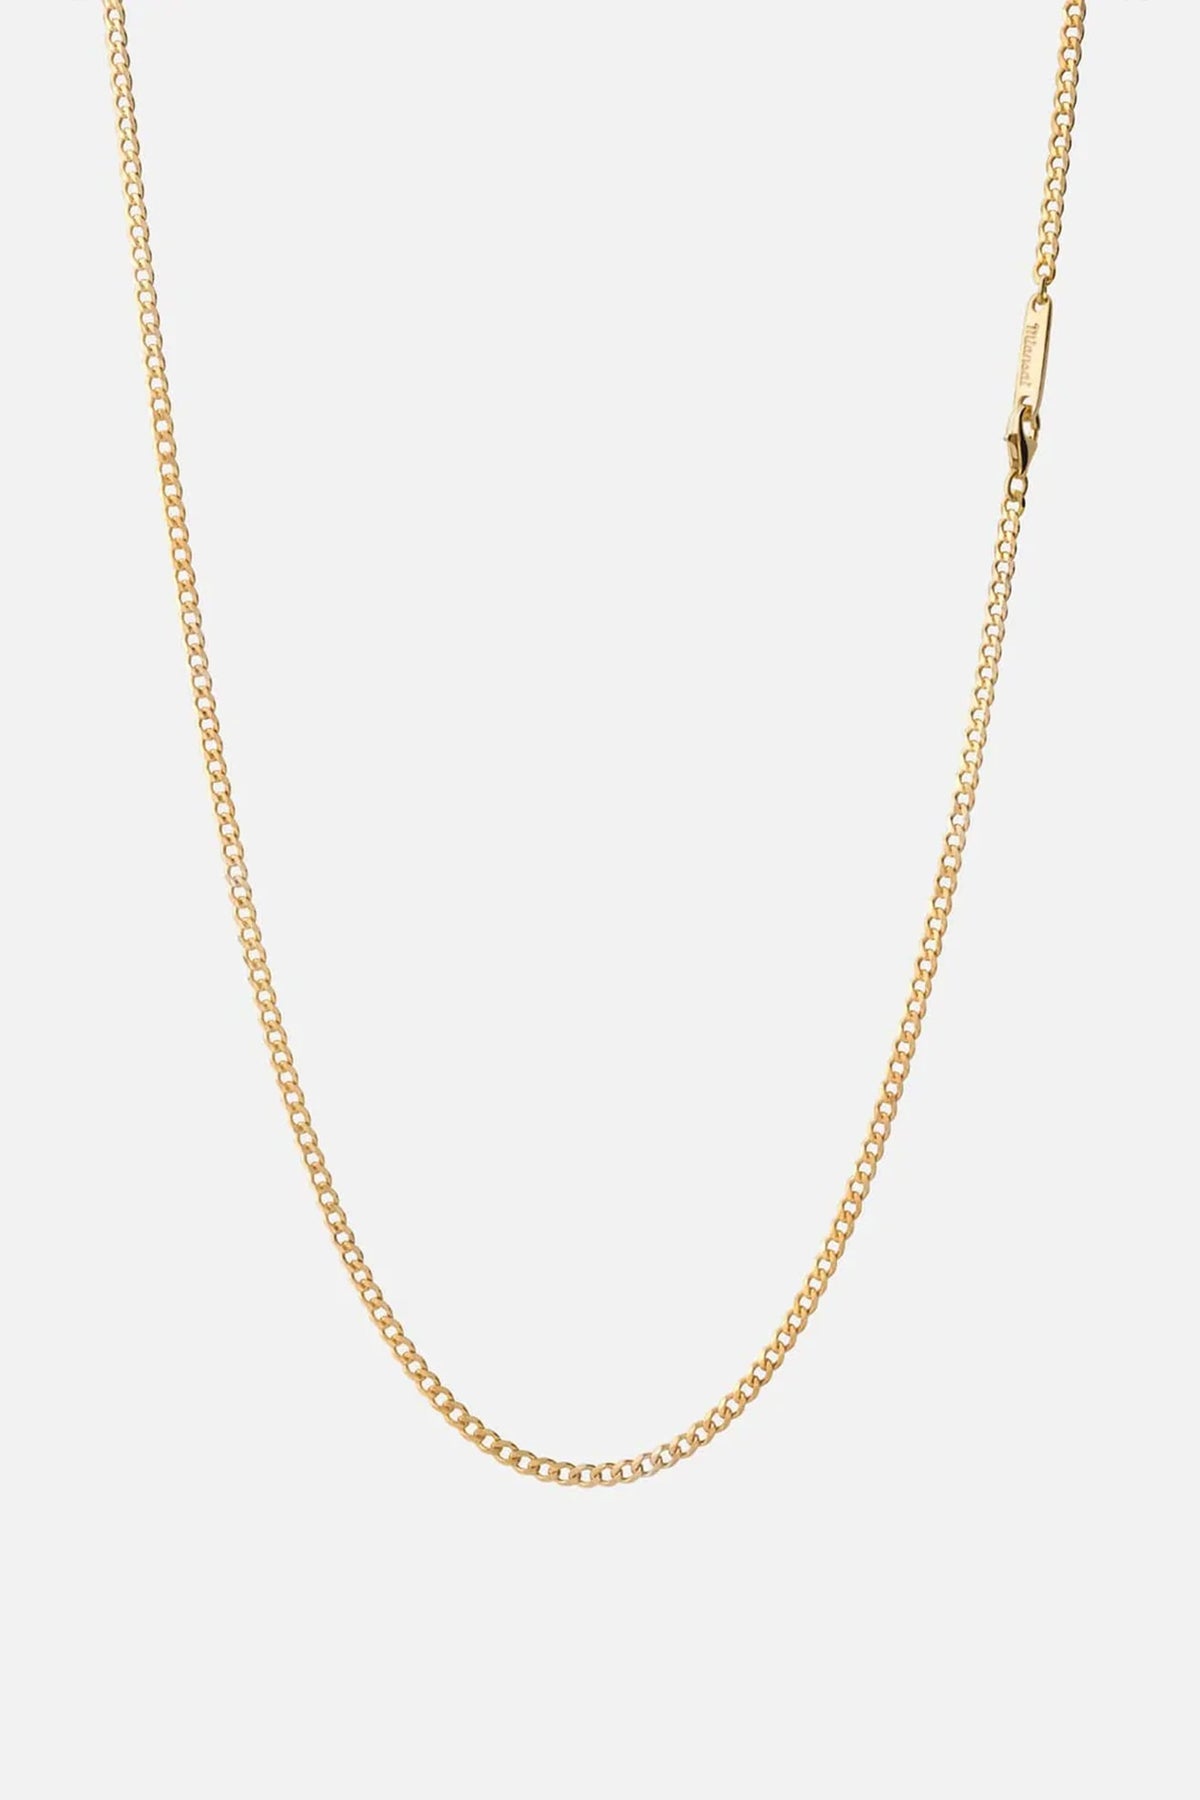 Miansai 3mm Cuban Chain Necklace Gold Vermeil